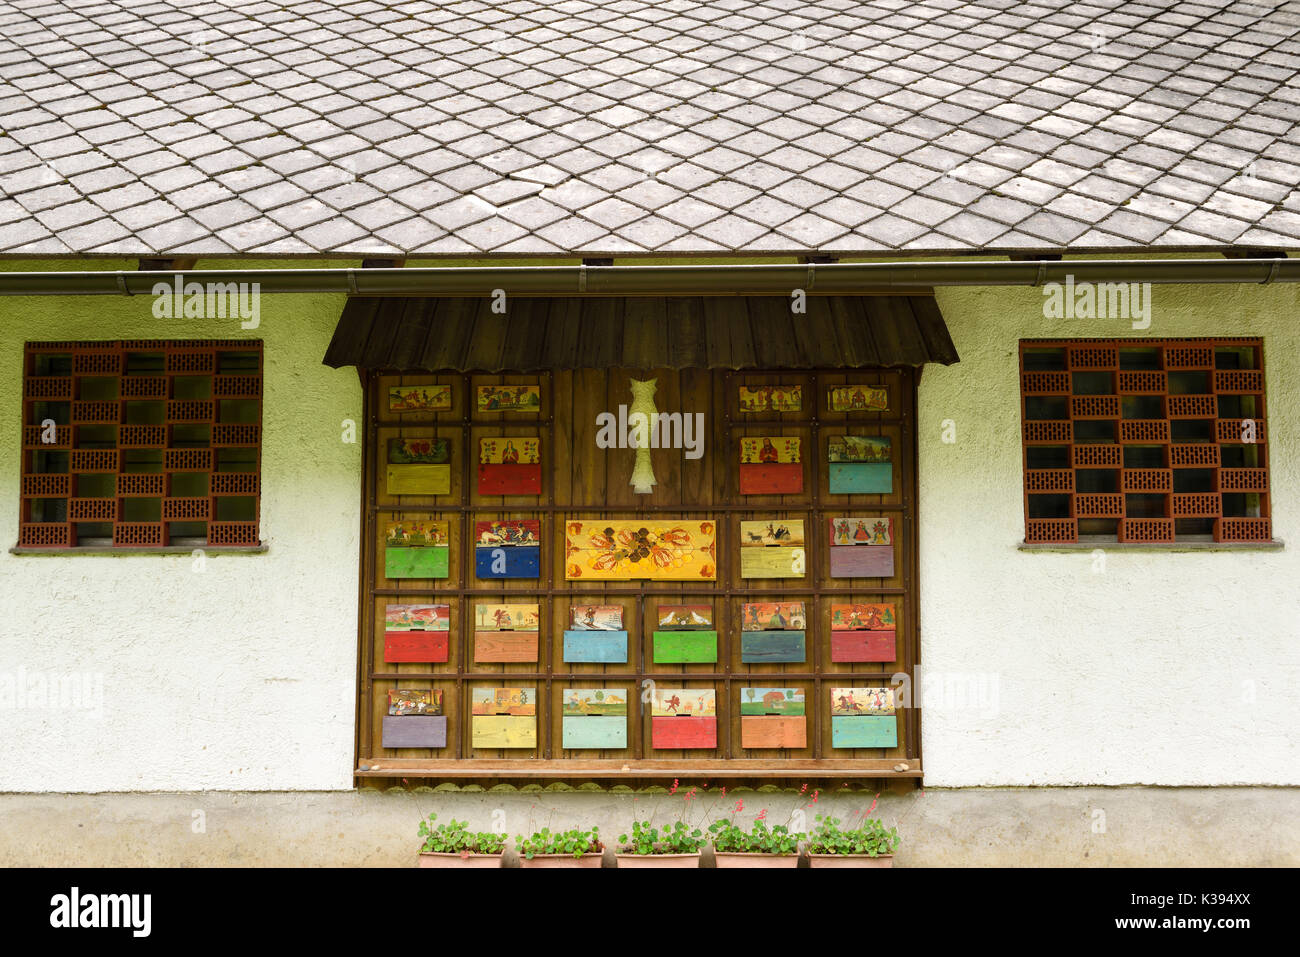 Bunt bemalte Imkerei Bienenstock deckt das Verzieren der Seite eines Gebäudes mit Stein Dach am Dornk farm Mlino Dorf Bled Slowenien Stockfoto